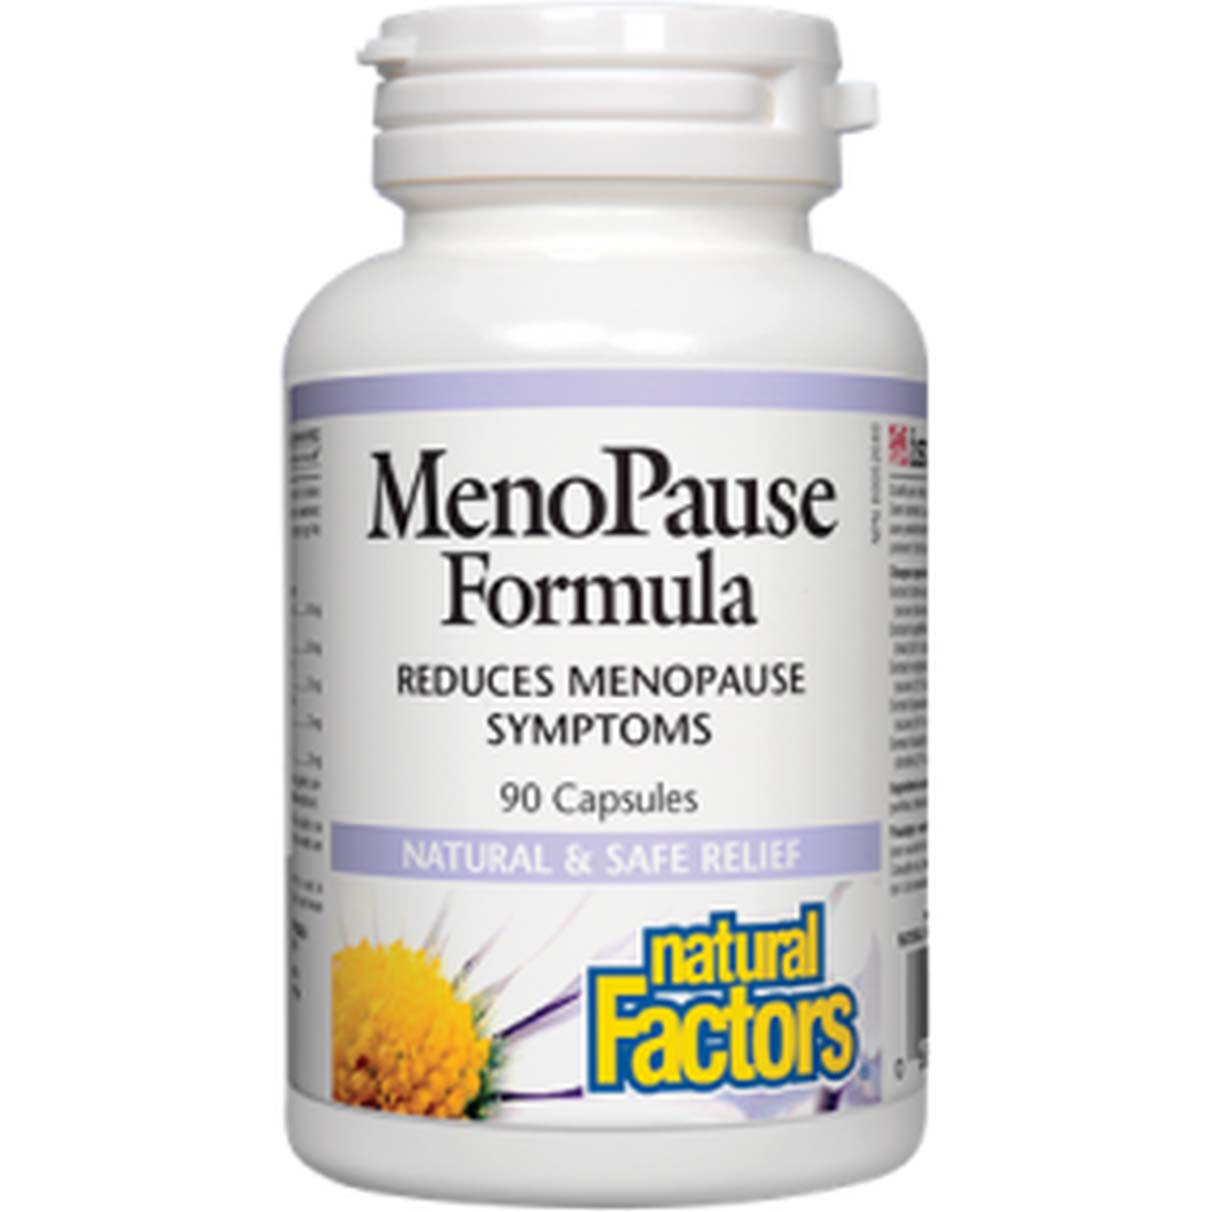 Natural Factors Menopause Formula 90 Capsules